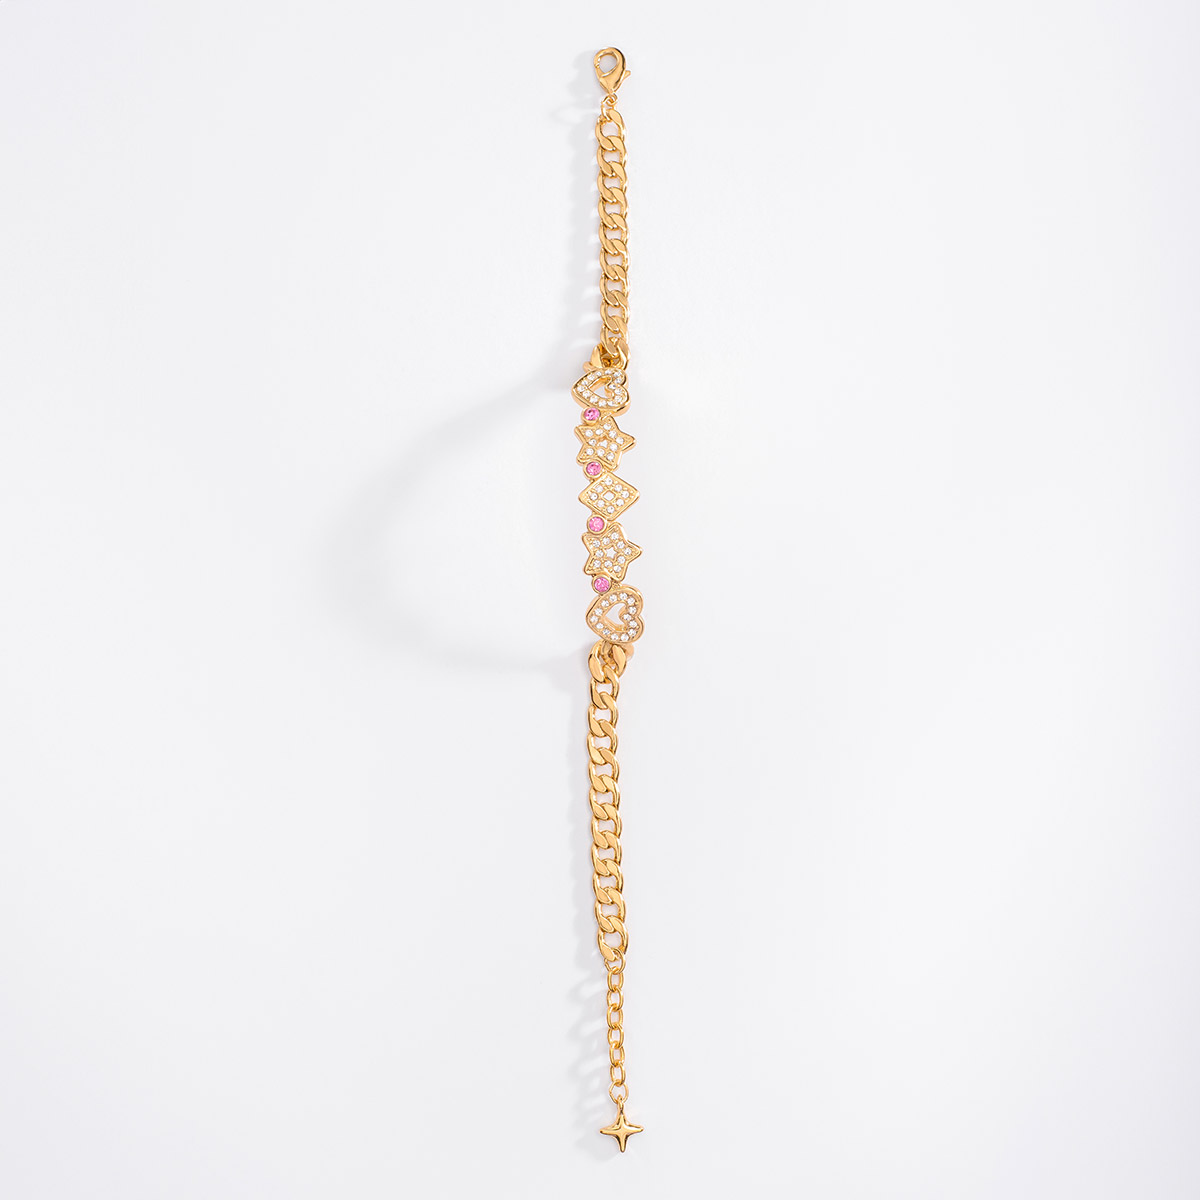 Pulsera de 18 cm + 2 cm de ext, en baño de oro, con piedras en tono rosa y cristal.